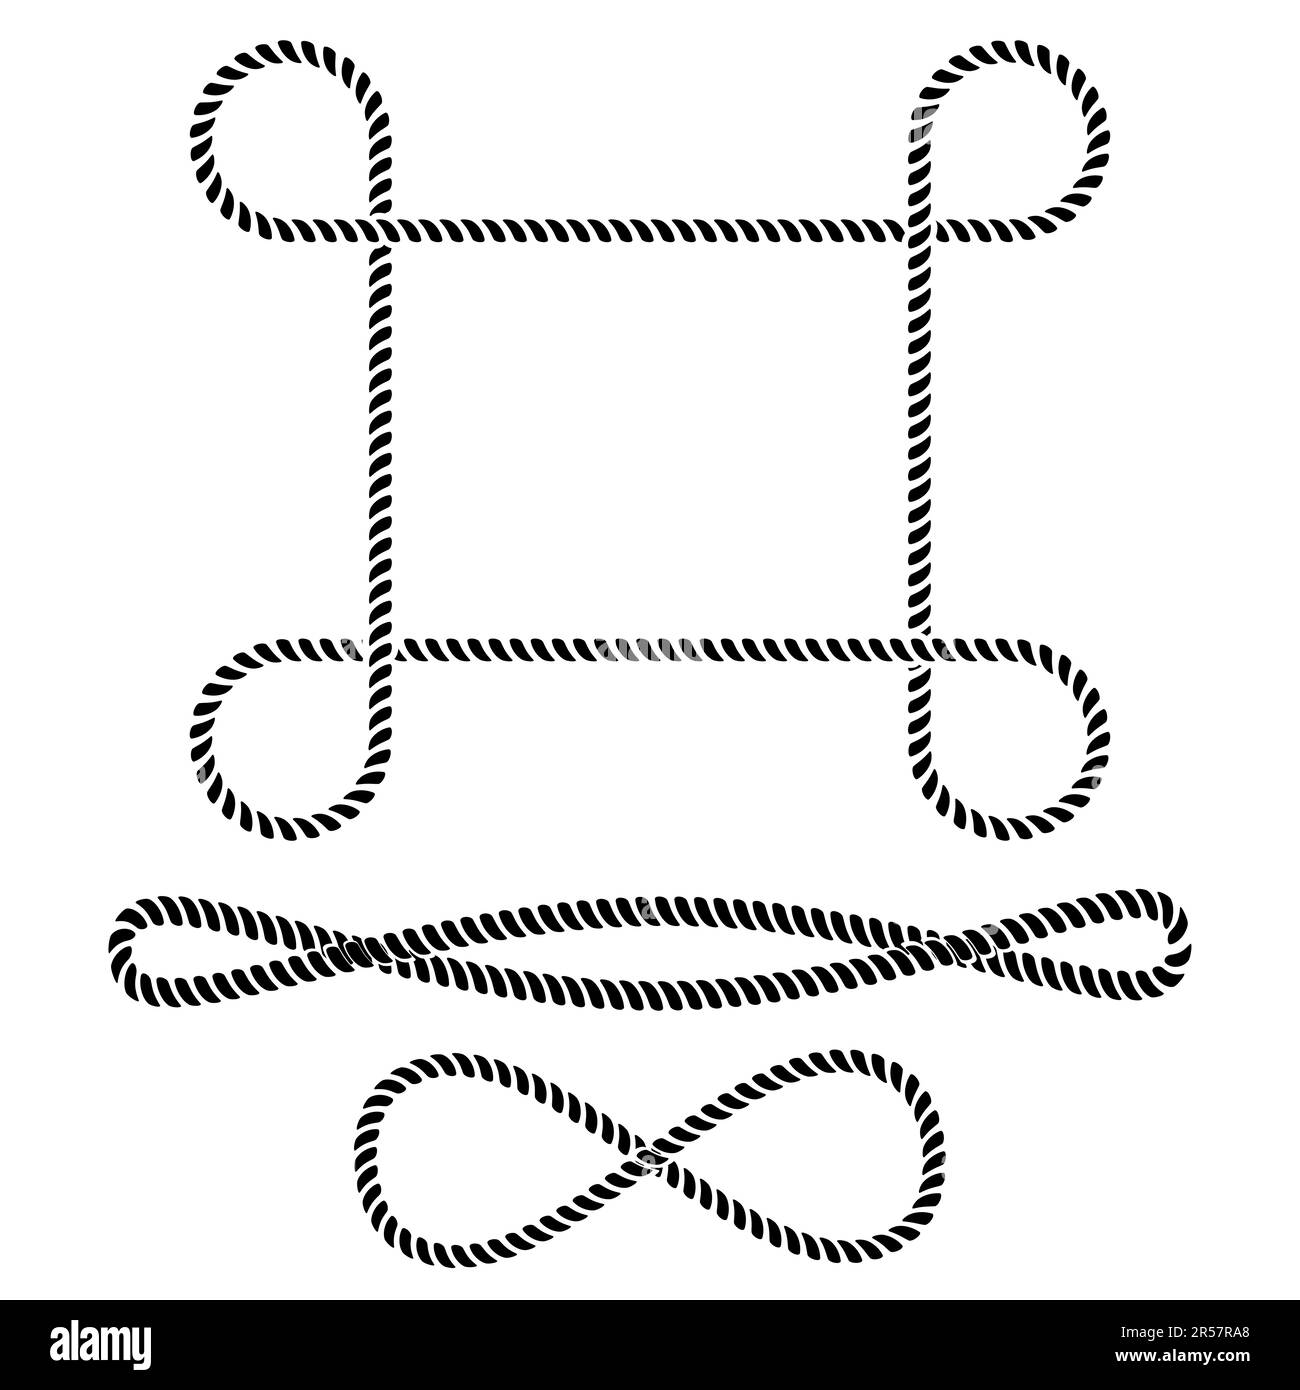 Corde sans fin comme élément décoratif, concept de l'infini, illustration vectorielle Banque D'Images